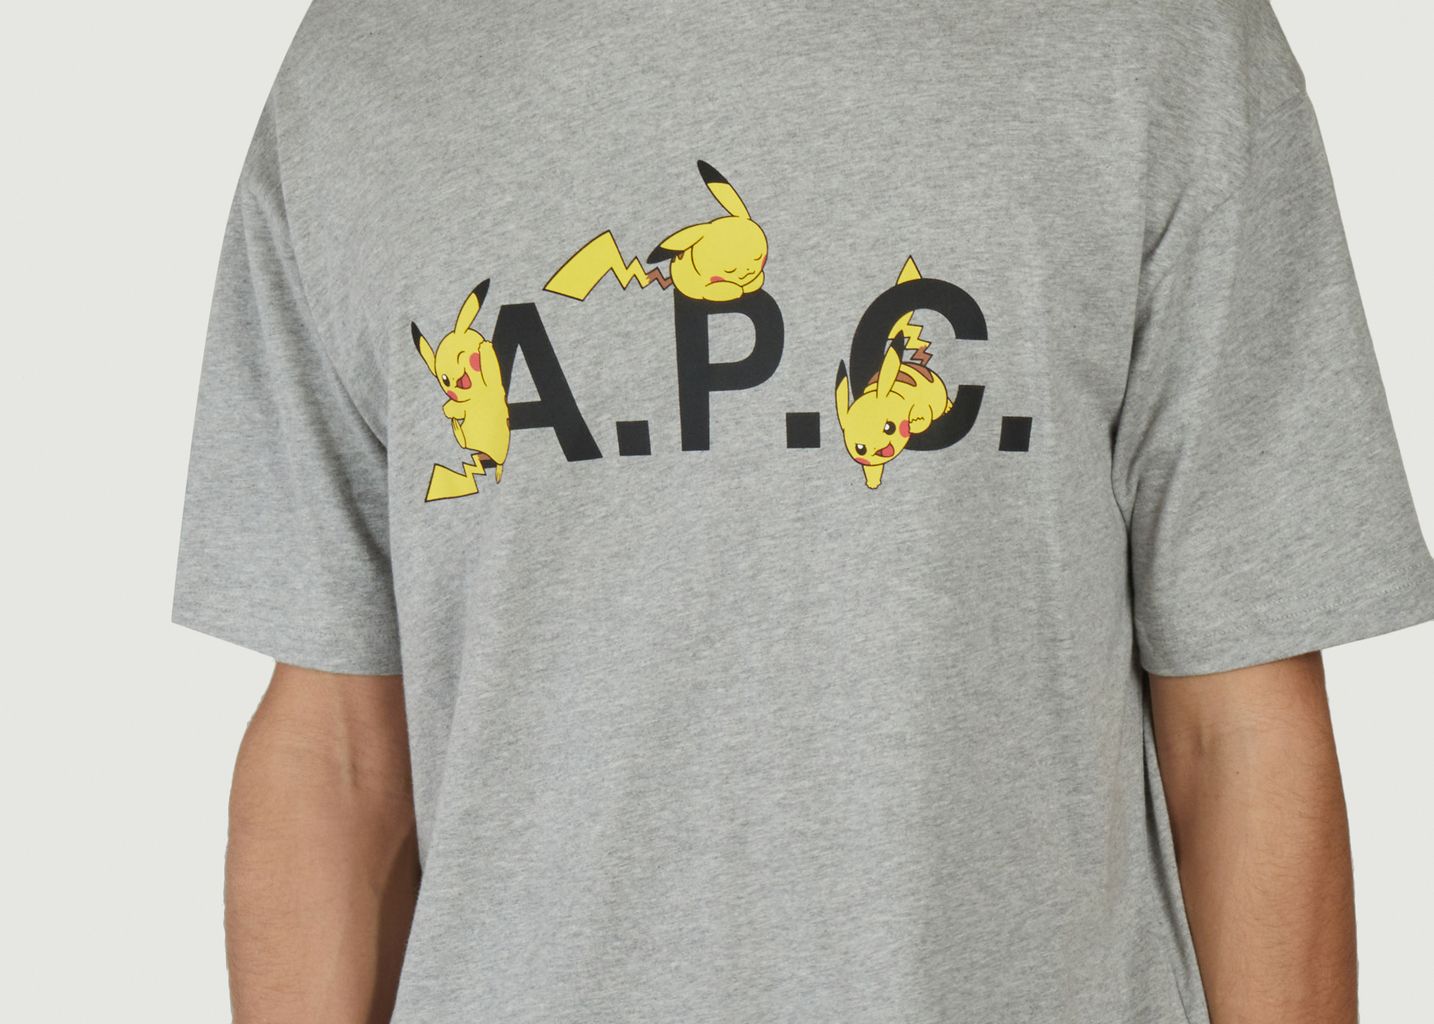 Pikachu printed T-shirt Pokémon x A.P.C. - A.P.C.